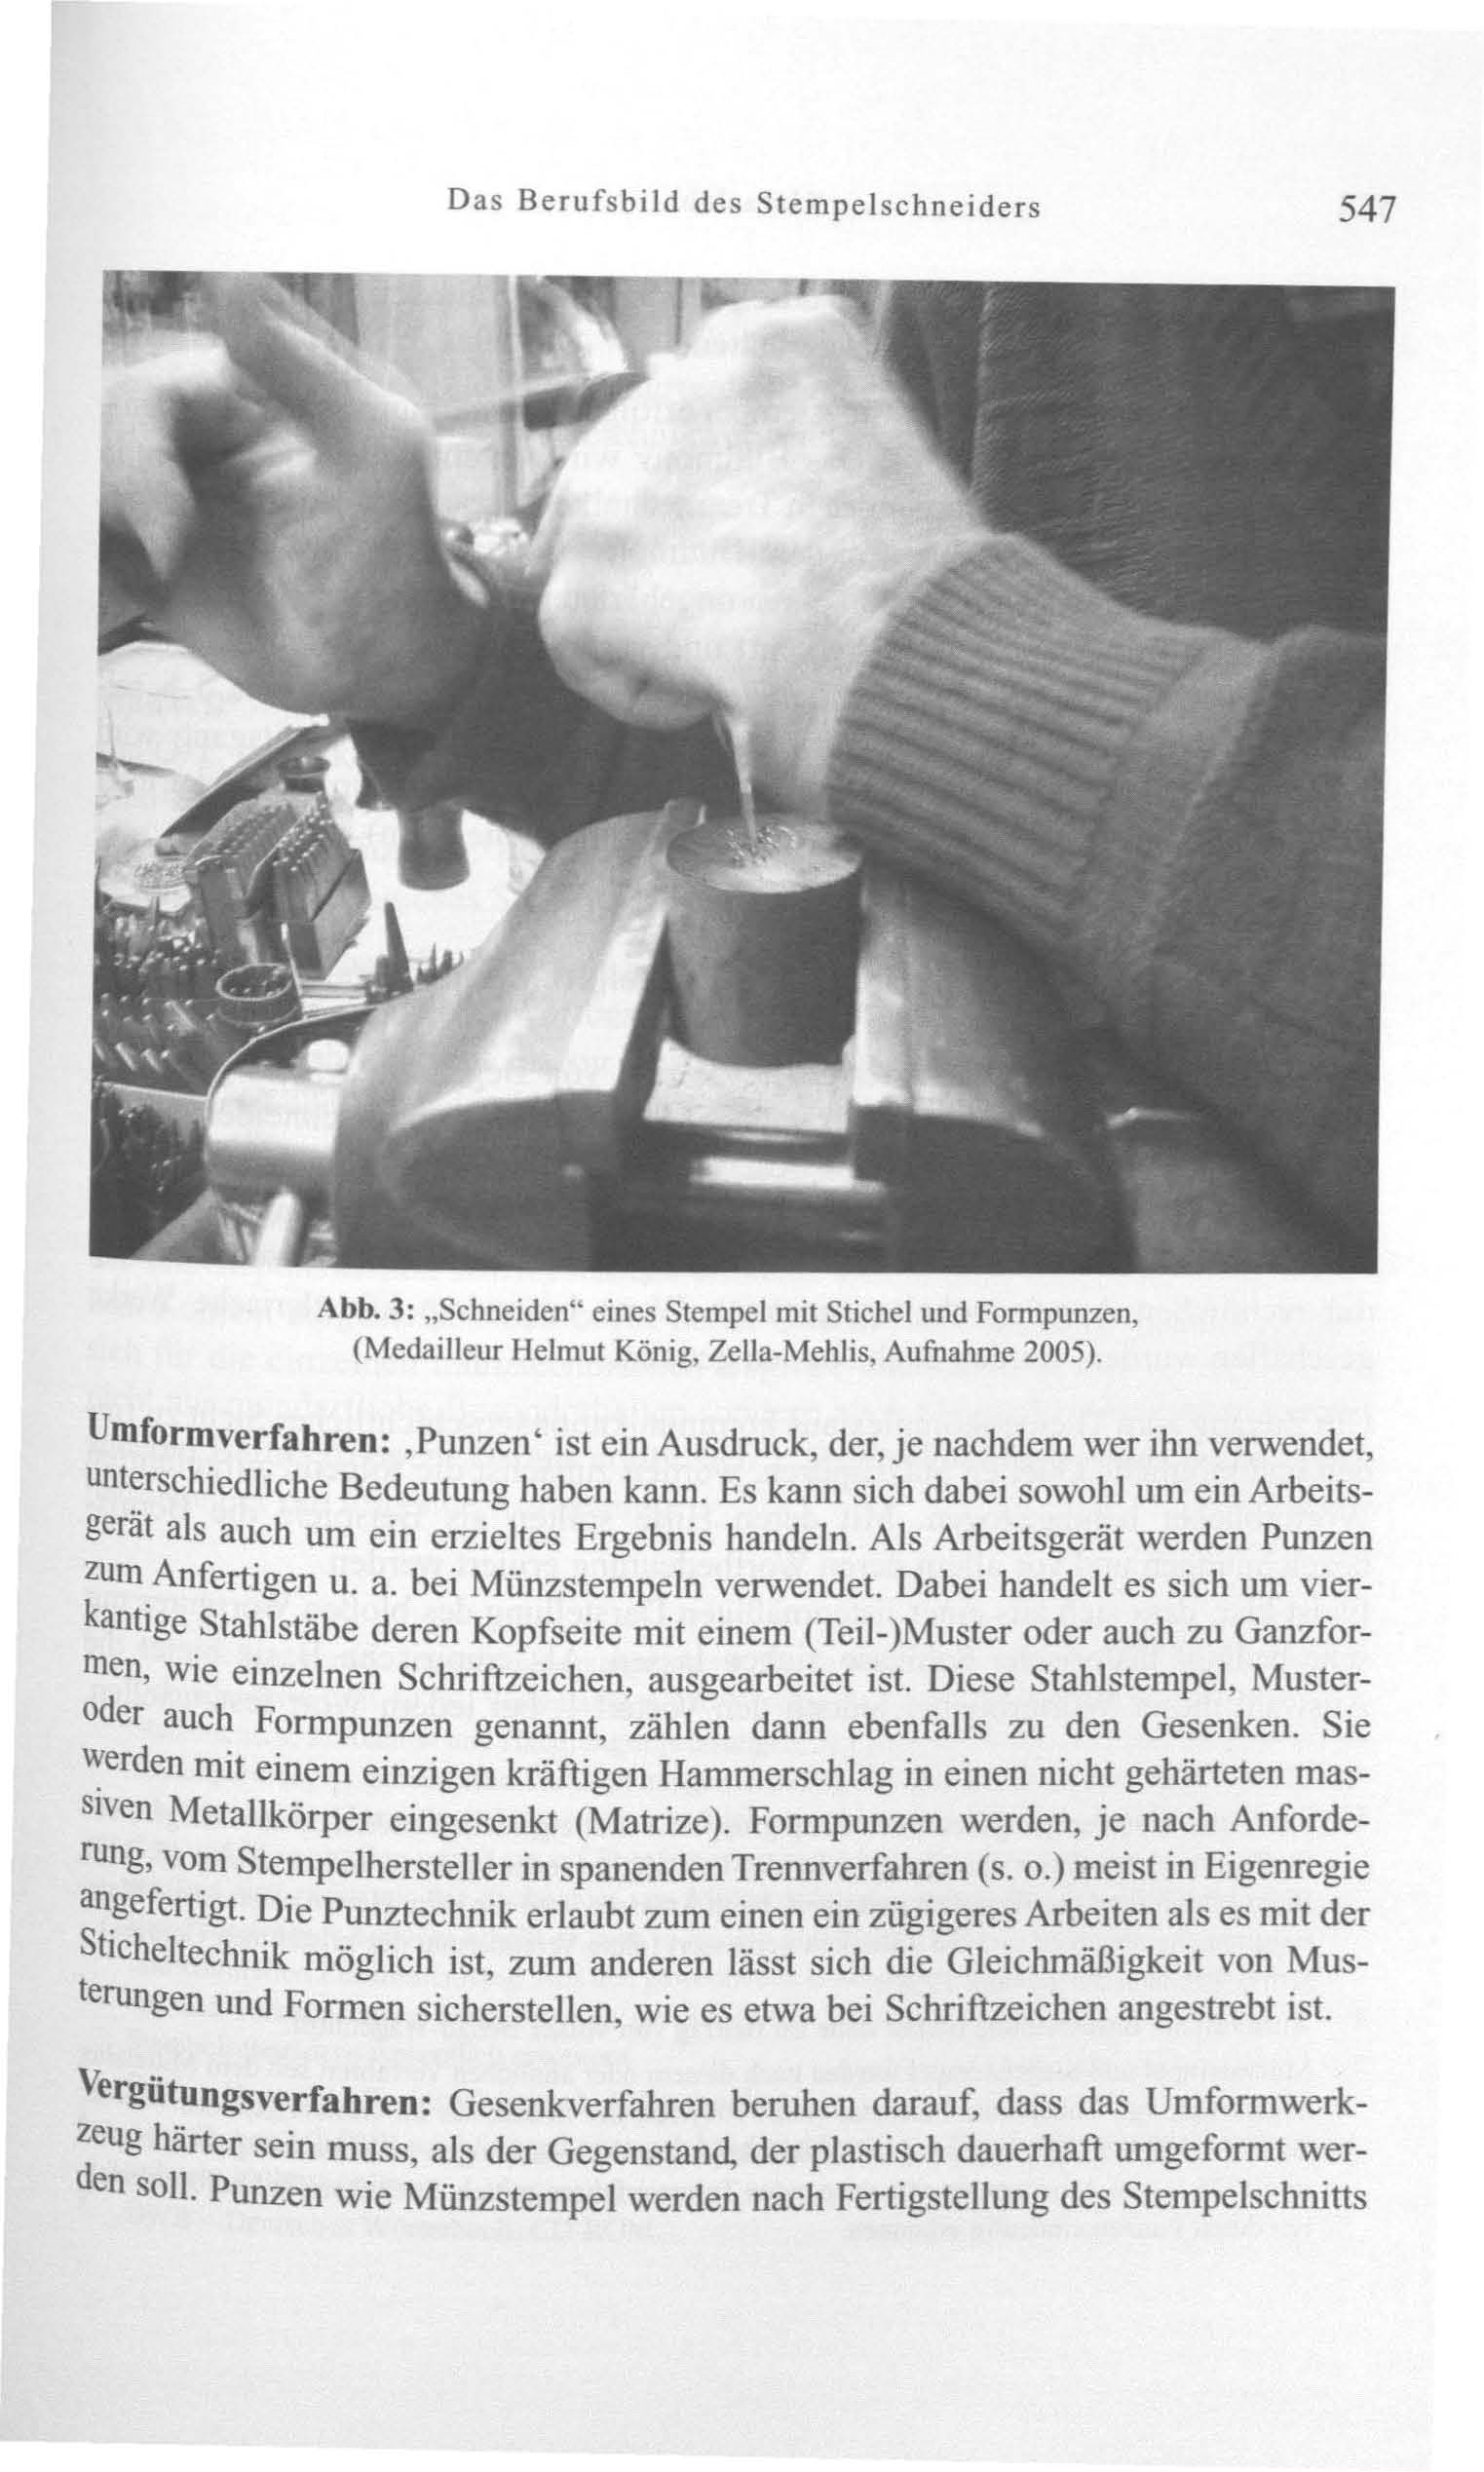 Das Berufsbild des Stempelschneiders 547 Abb. 3: "Schneiden" eines Stempel mit Stichel und Formpunzen, (Medailleur Helmut König, Zella-Mehlis, Aufnahme 2005).